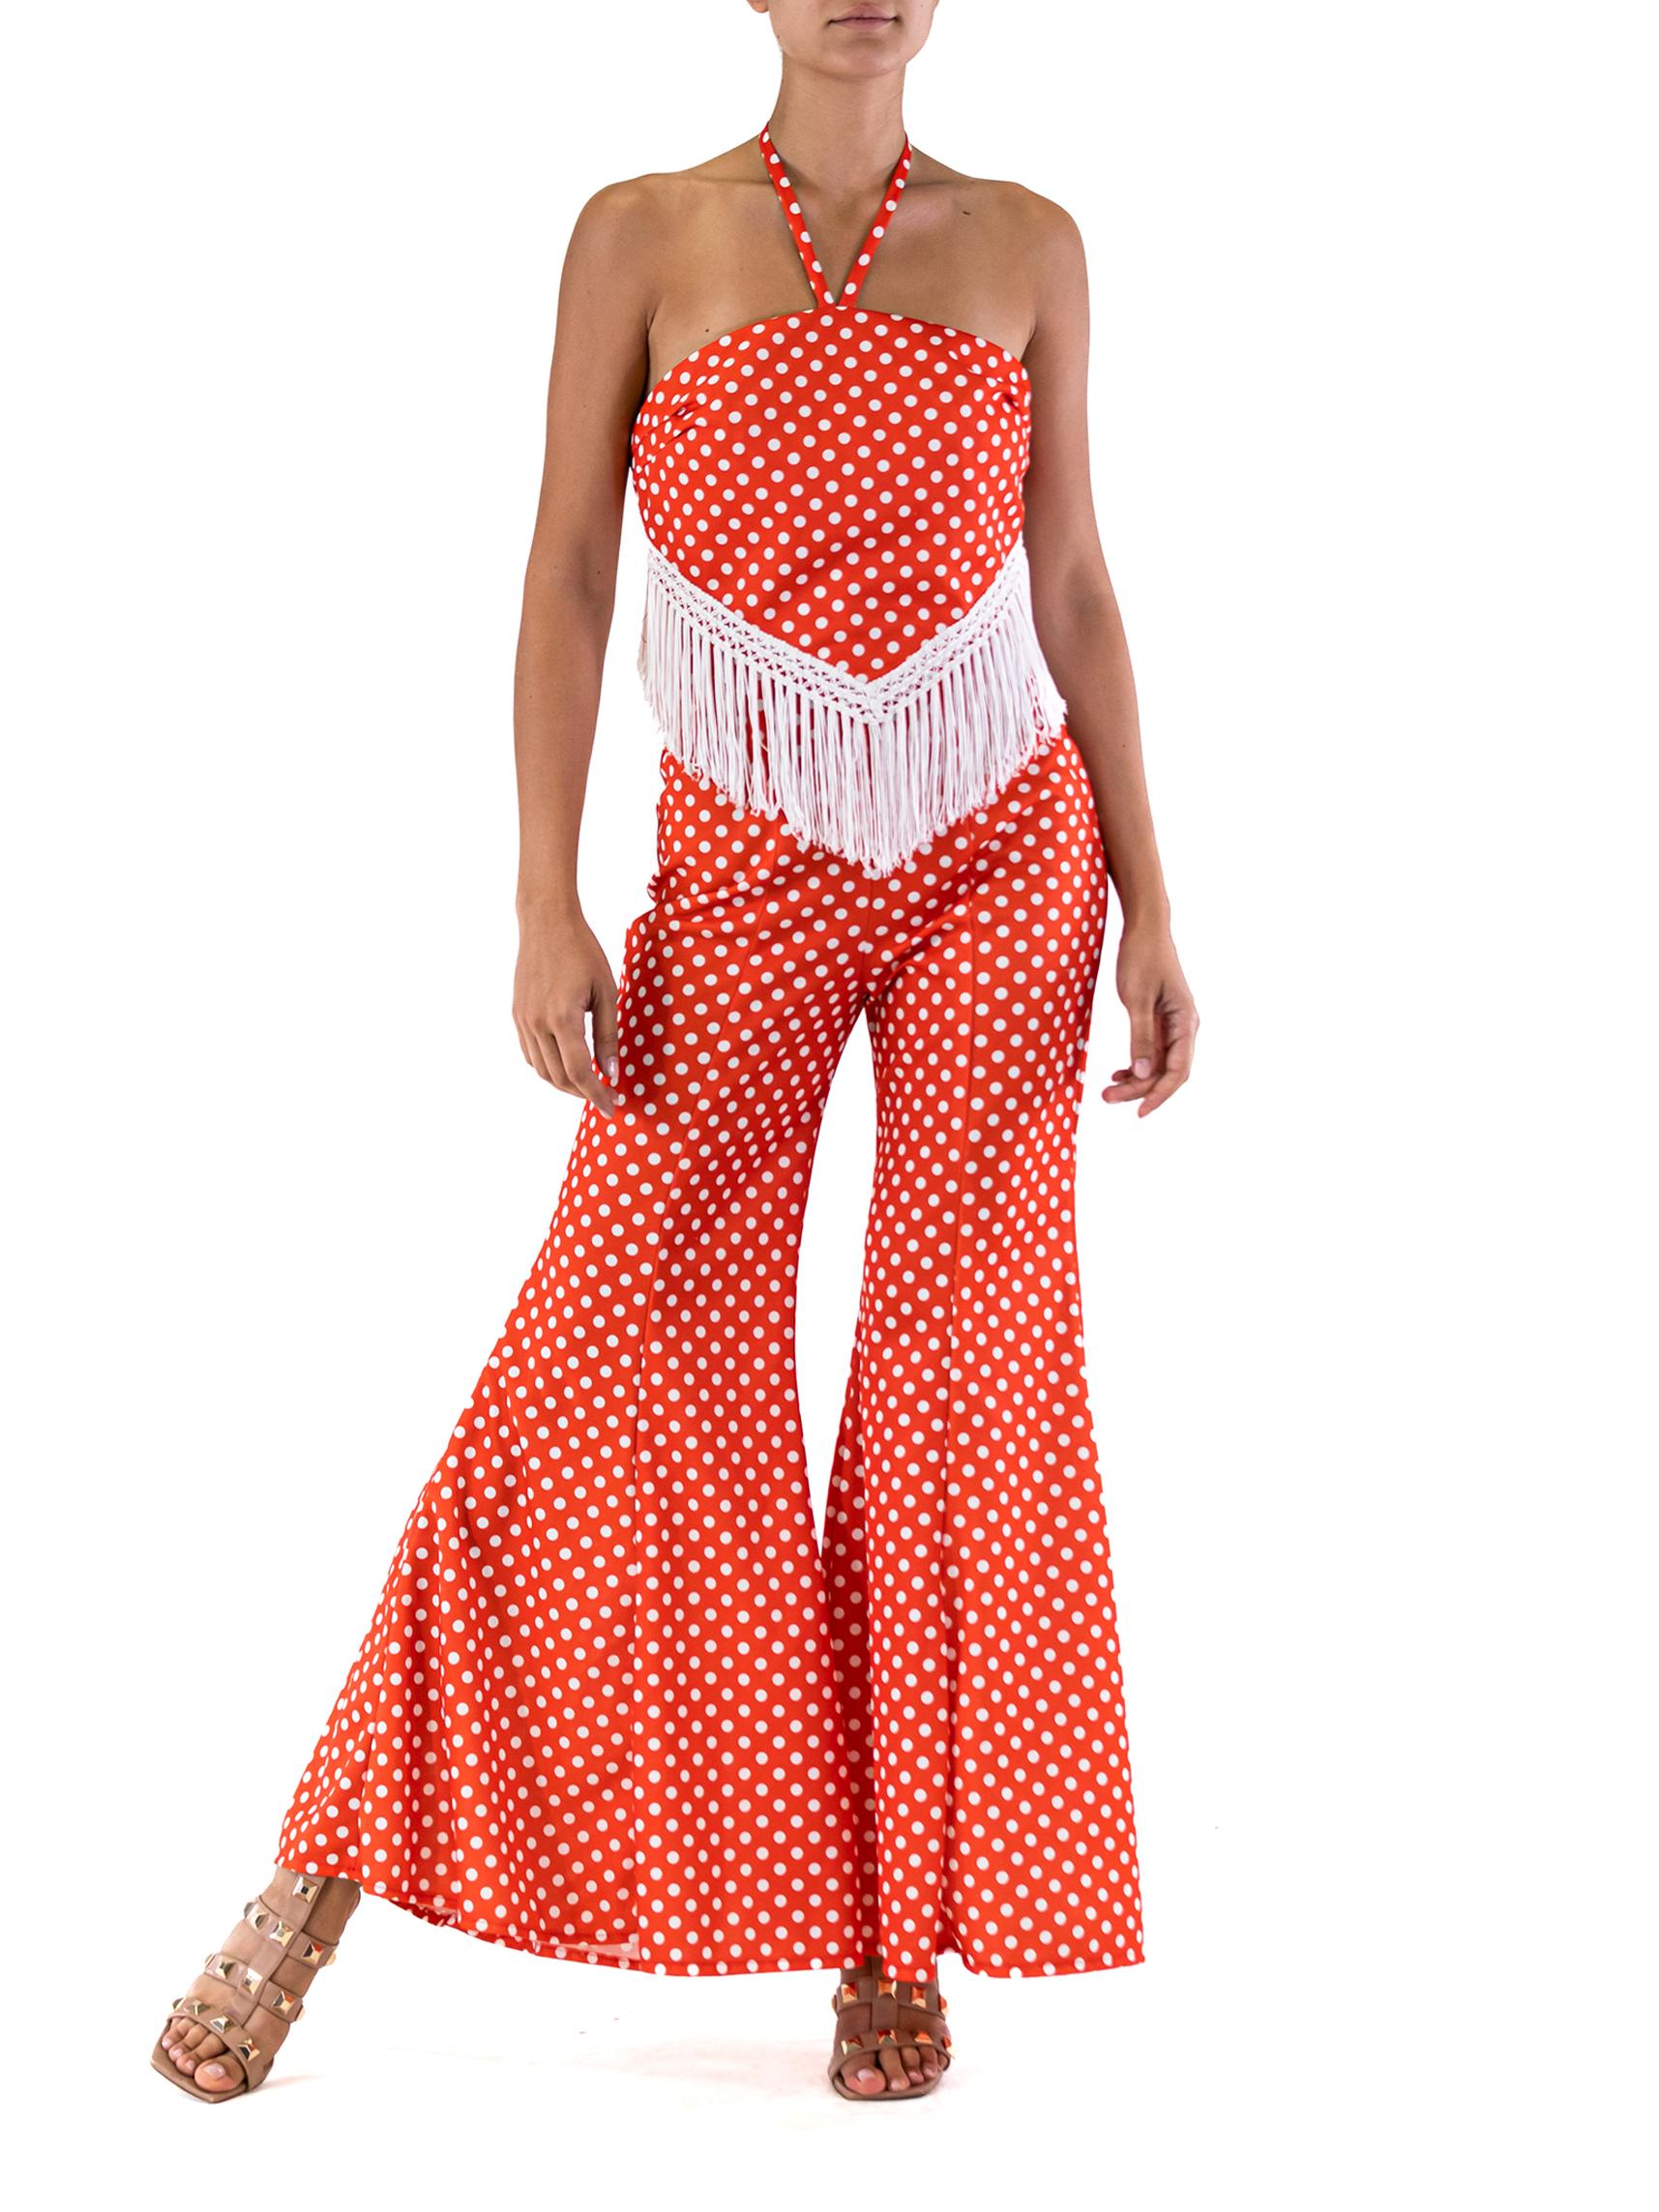 Viel Stretch, dieses Kleidungsstück passt vielen Größen. 1970S Rot Weiß Polka Dot Muster Breite Flare Bell Bottom  Jumpsuit mit Fransen 